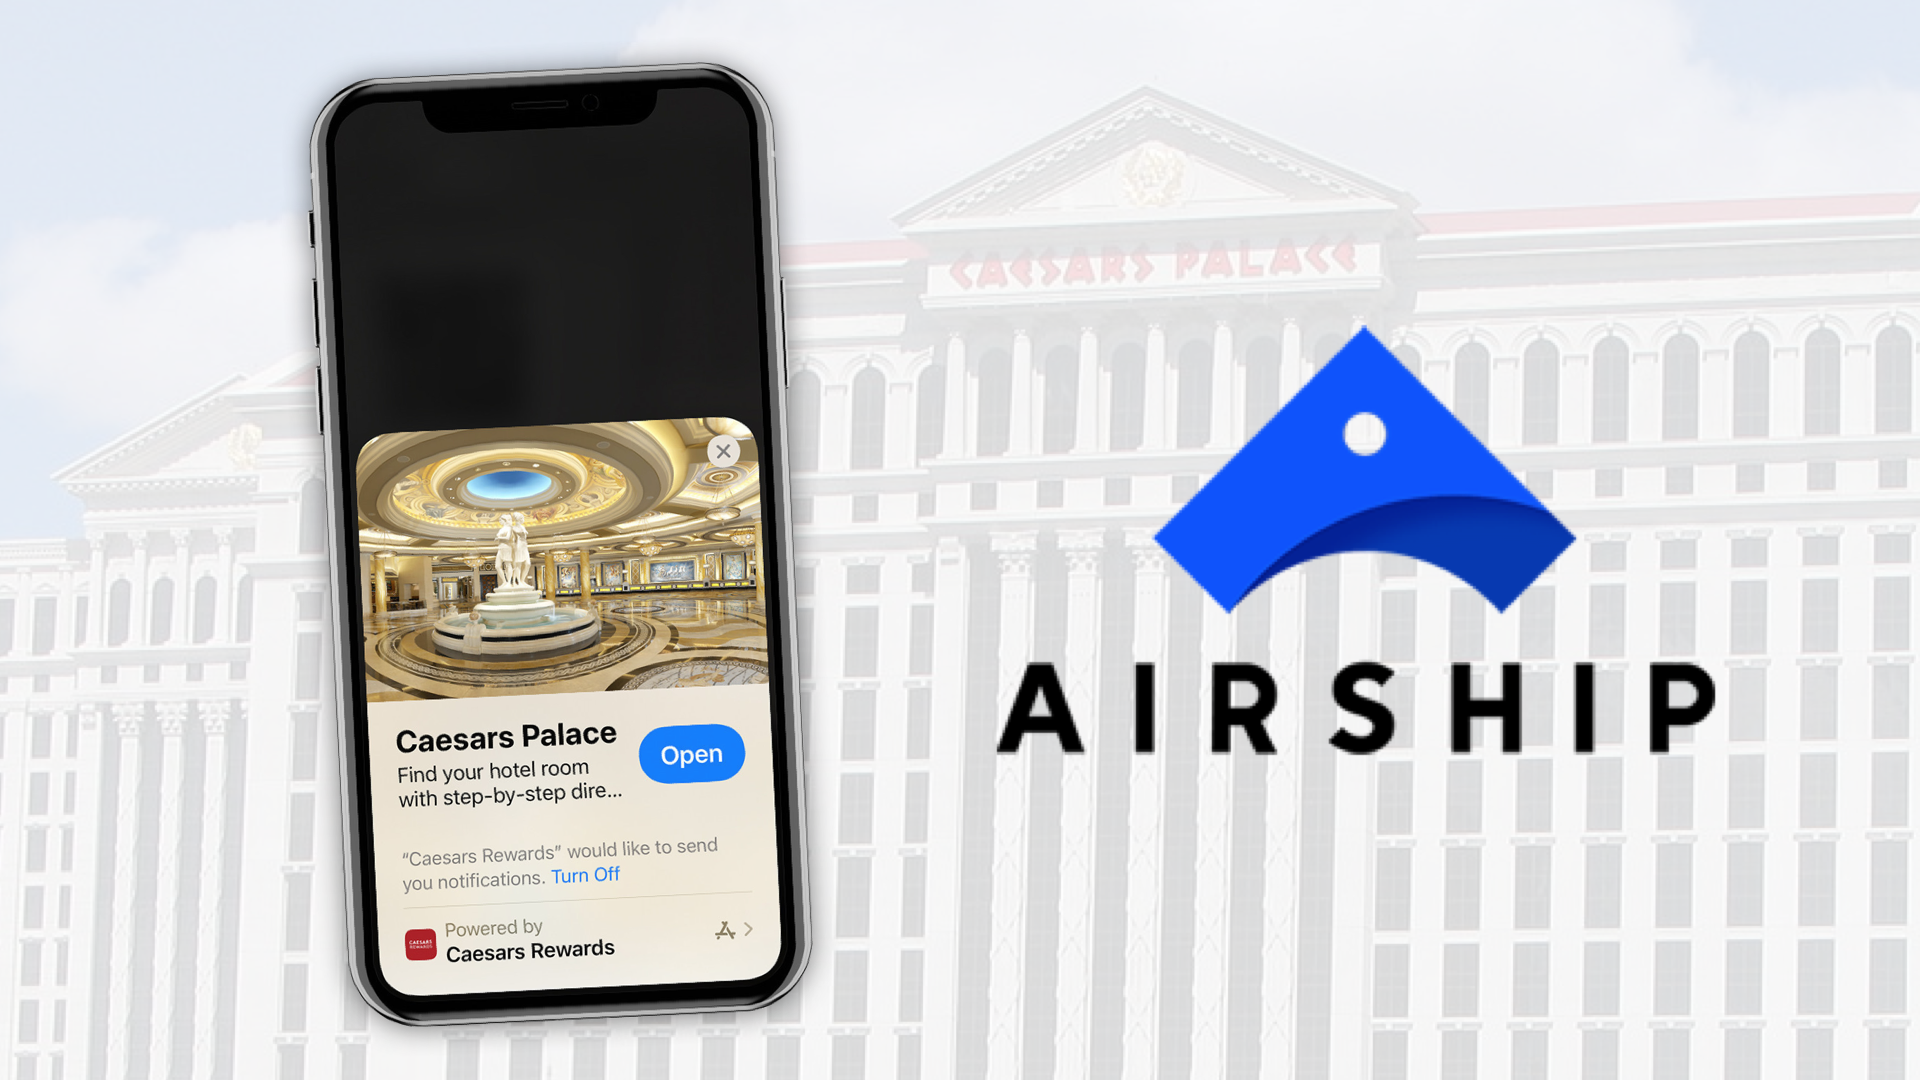 Airship déploie les "App Clips" pour son client Caesar's Palace